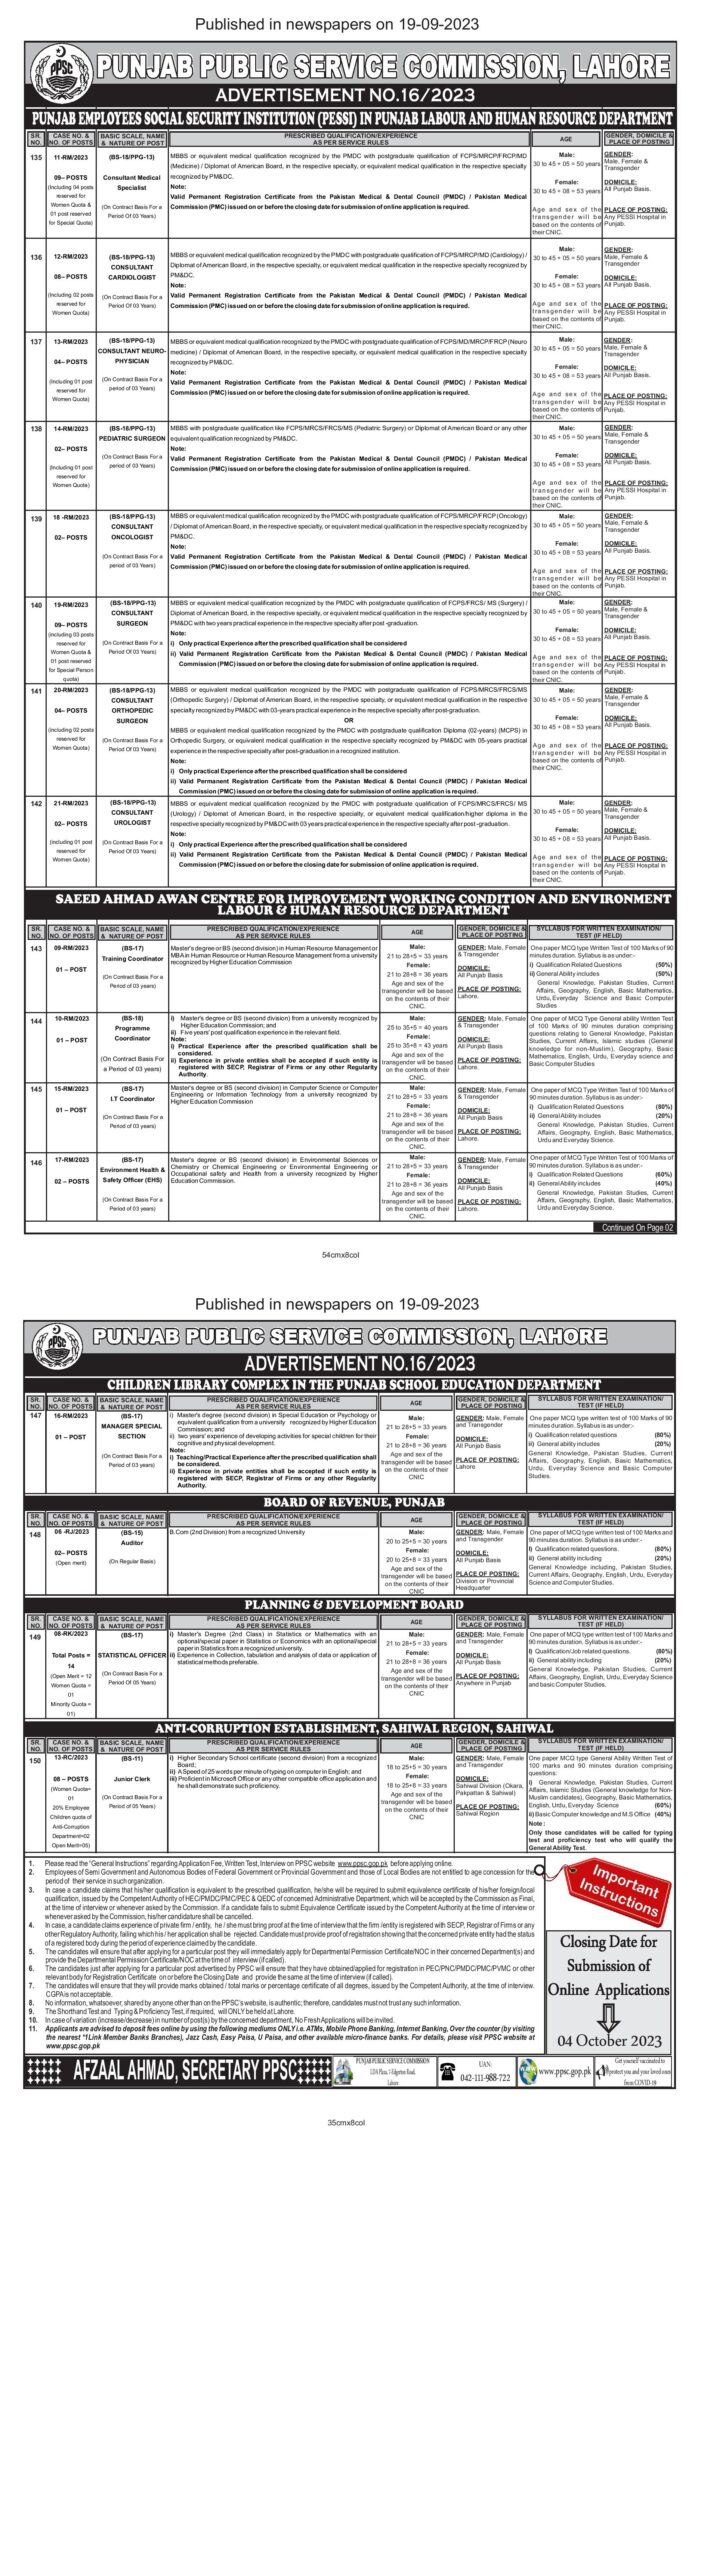 Punjab Public Service Commission PPSC Advertisement No.16/2023 Latest Job Opportunities